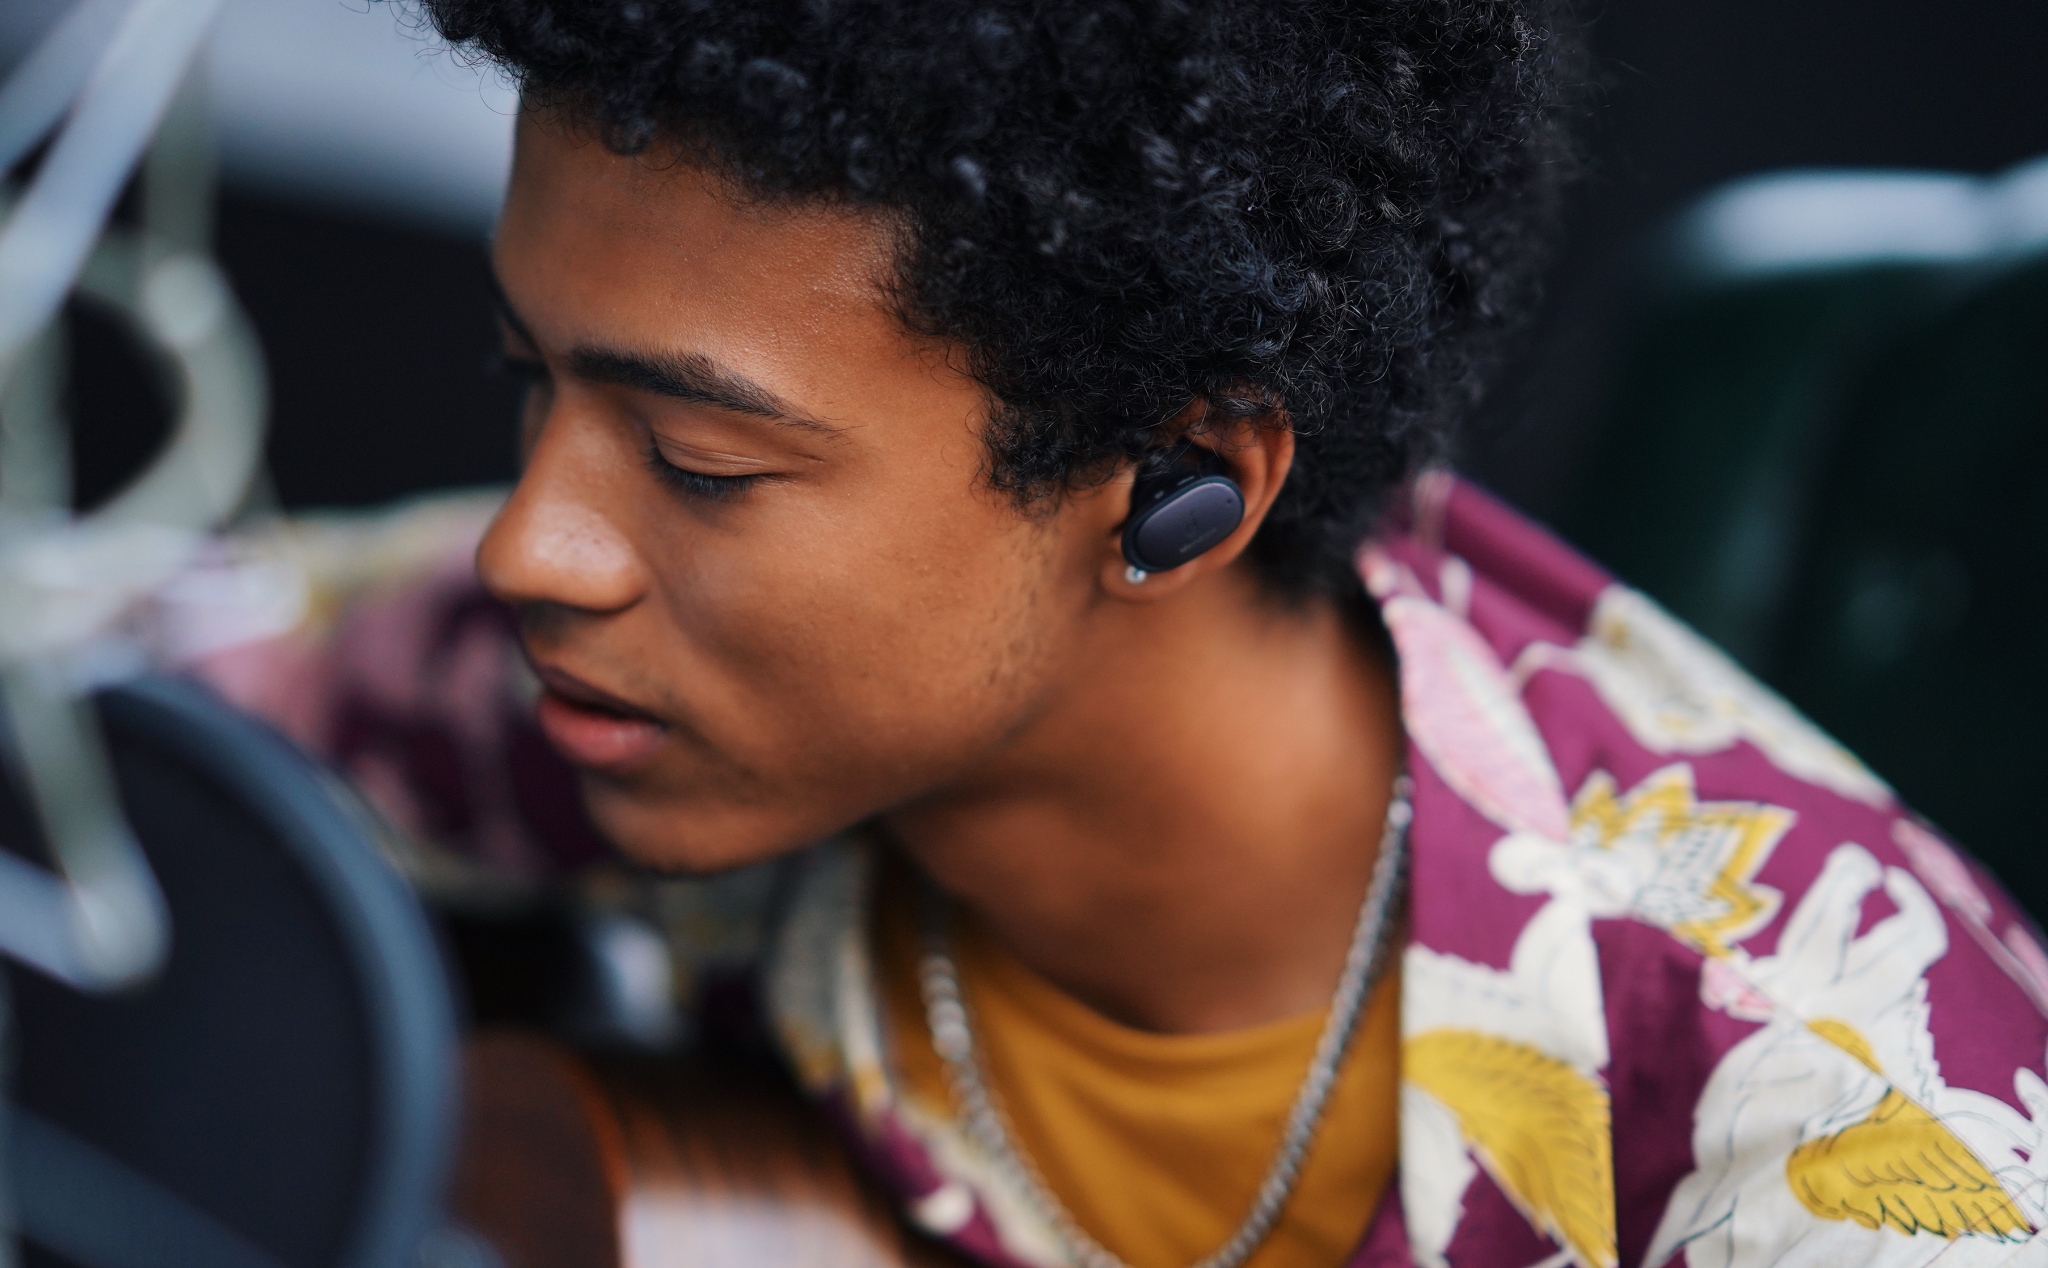 Anker giới thiệu loạt 5 sản phẩm tai nghe True-Wireless giá rẻ thuộc dòng Liberty và Spirit